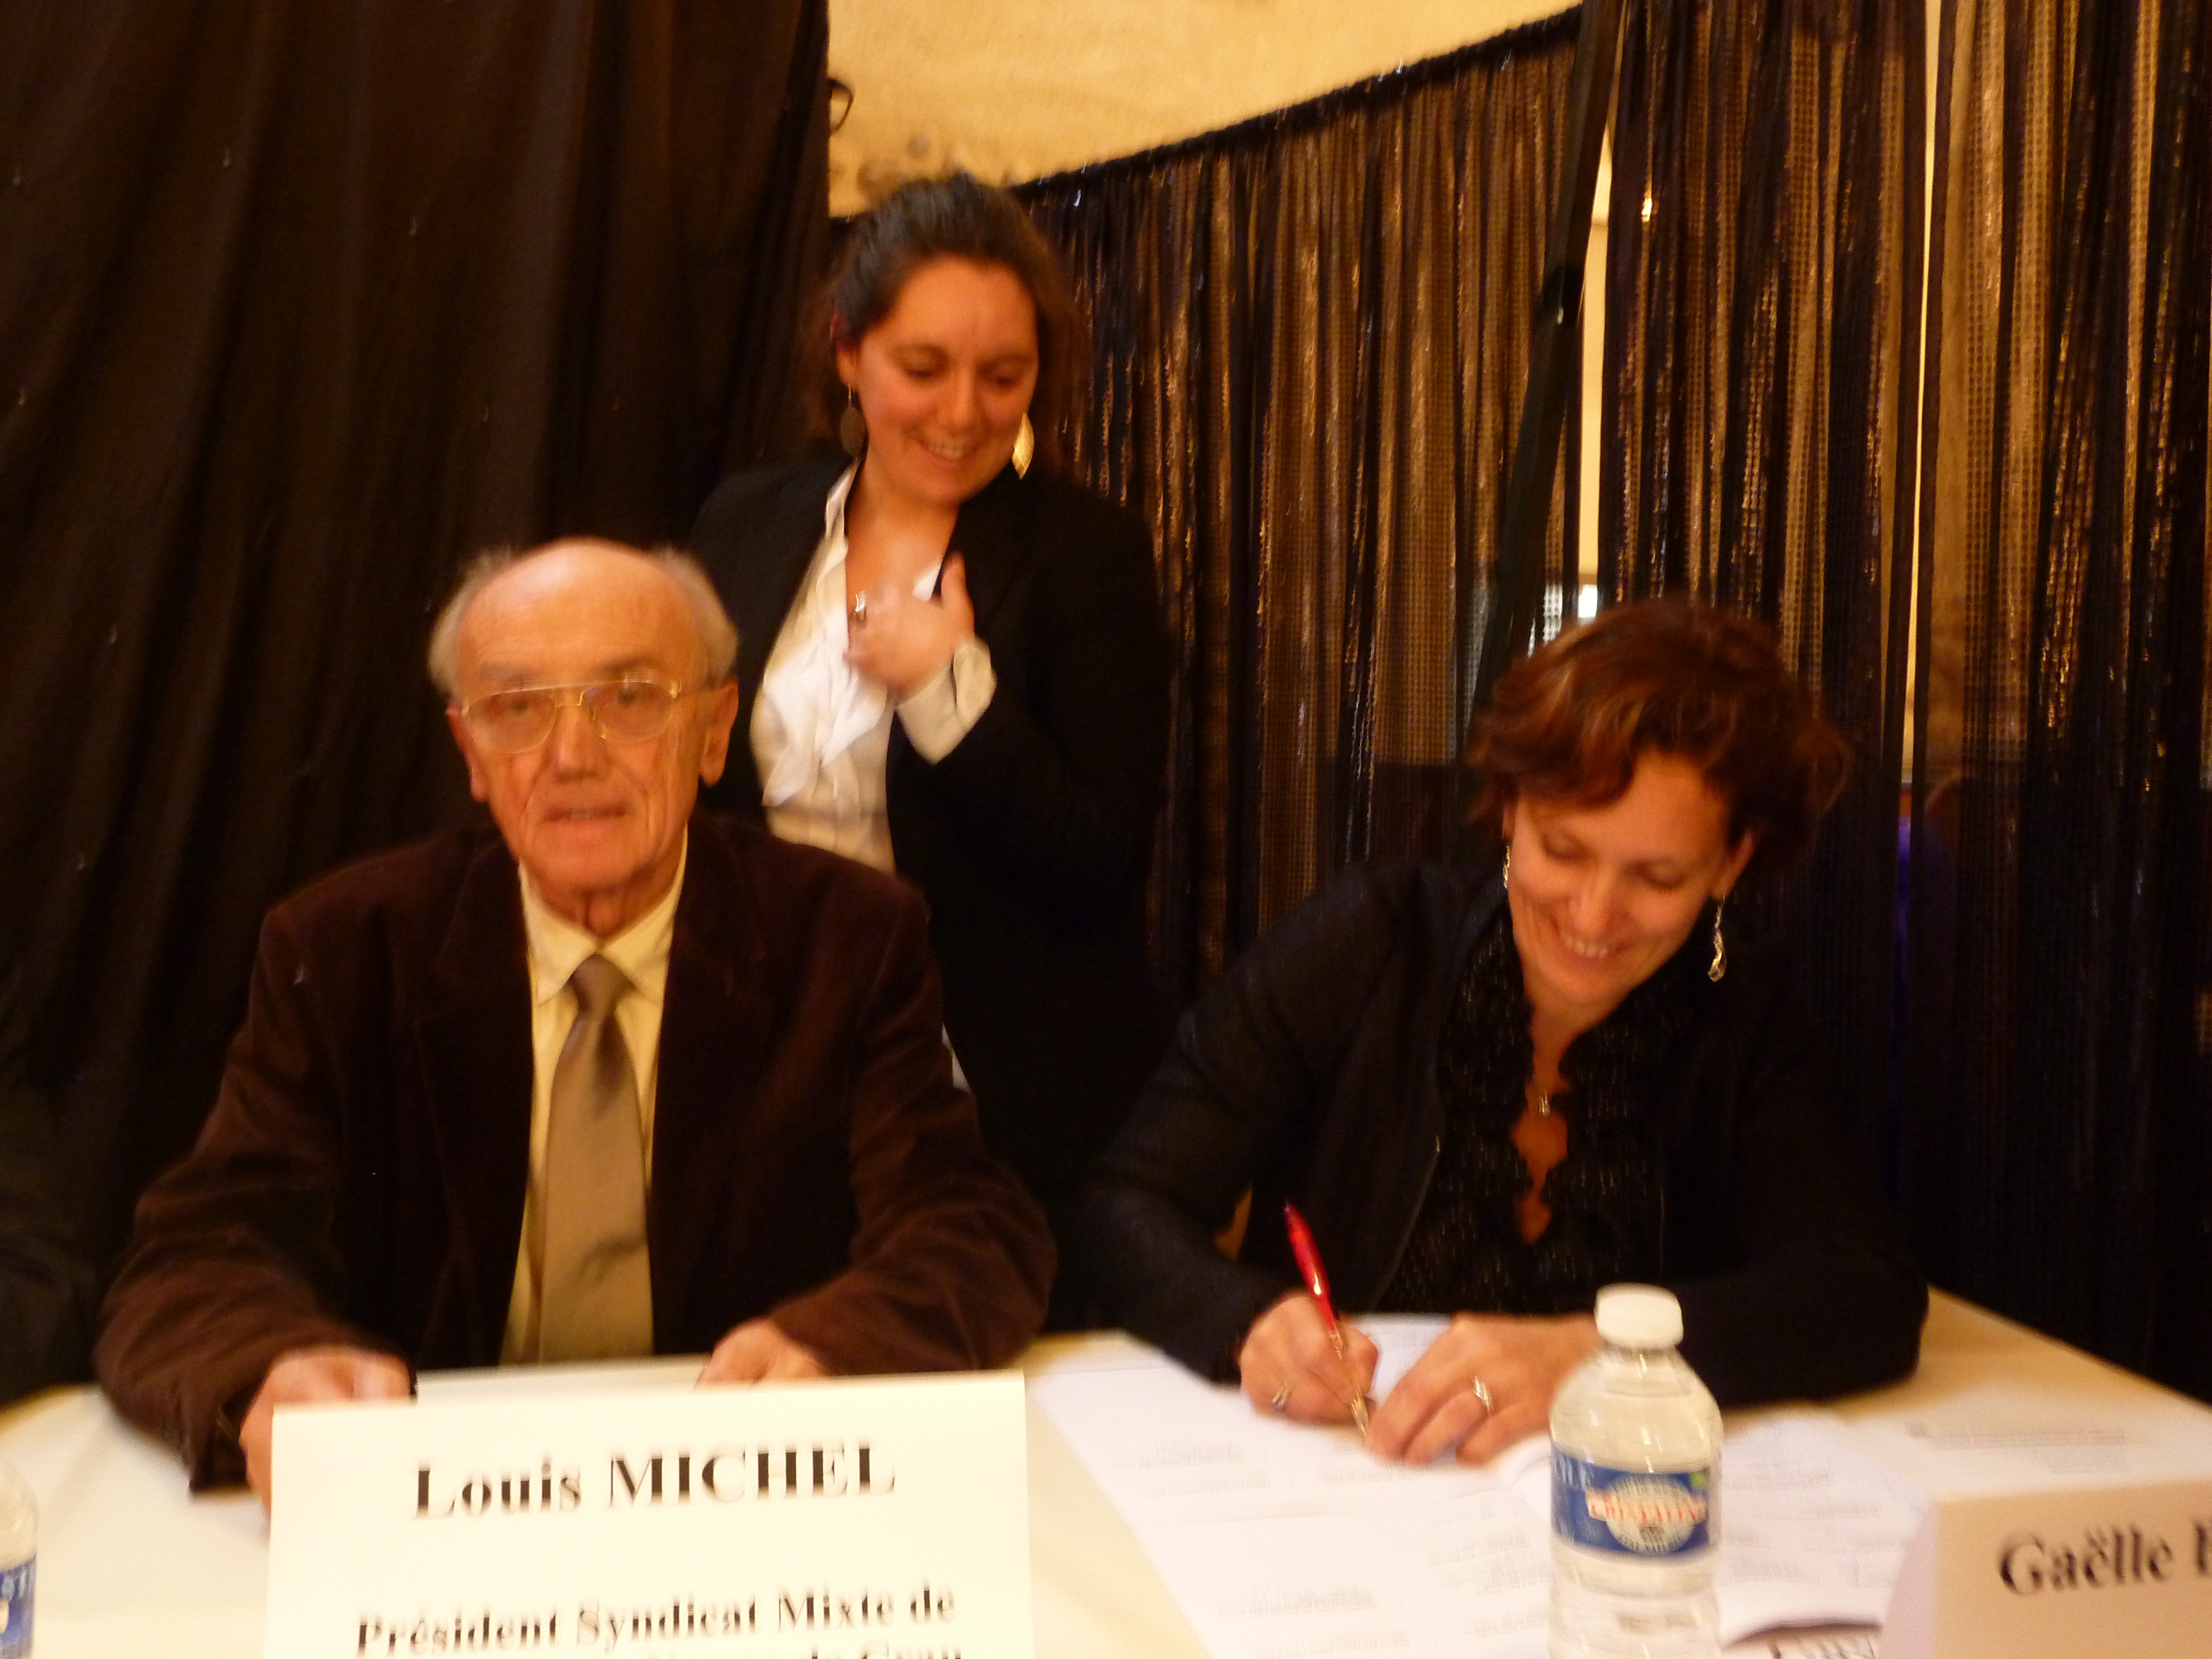 De gauche à droite : Louis Michel, président du Syndicat mixte d'études et de gestion de la nappe phréatique de Crau, et Gaëlle Berthaud